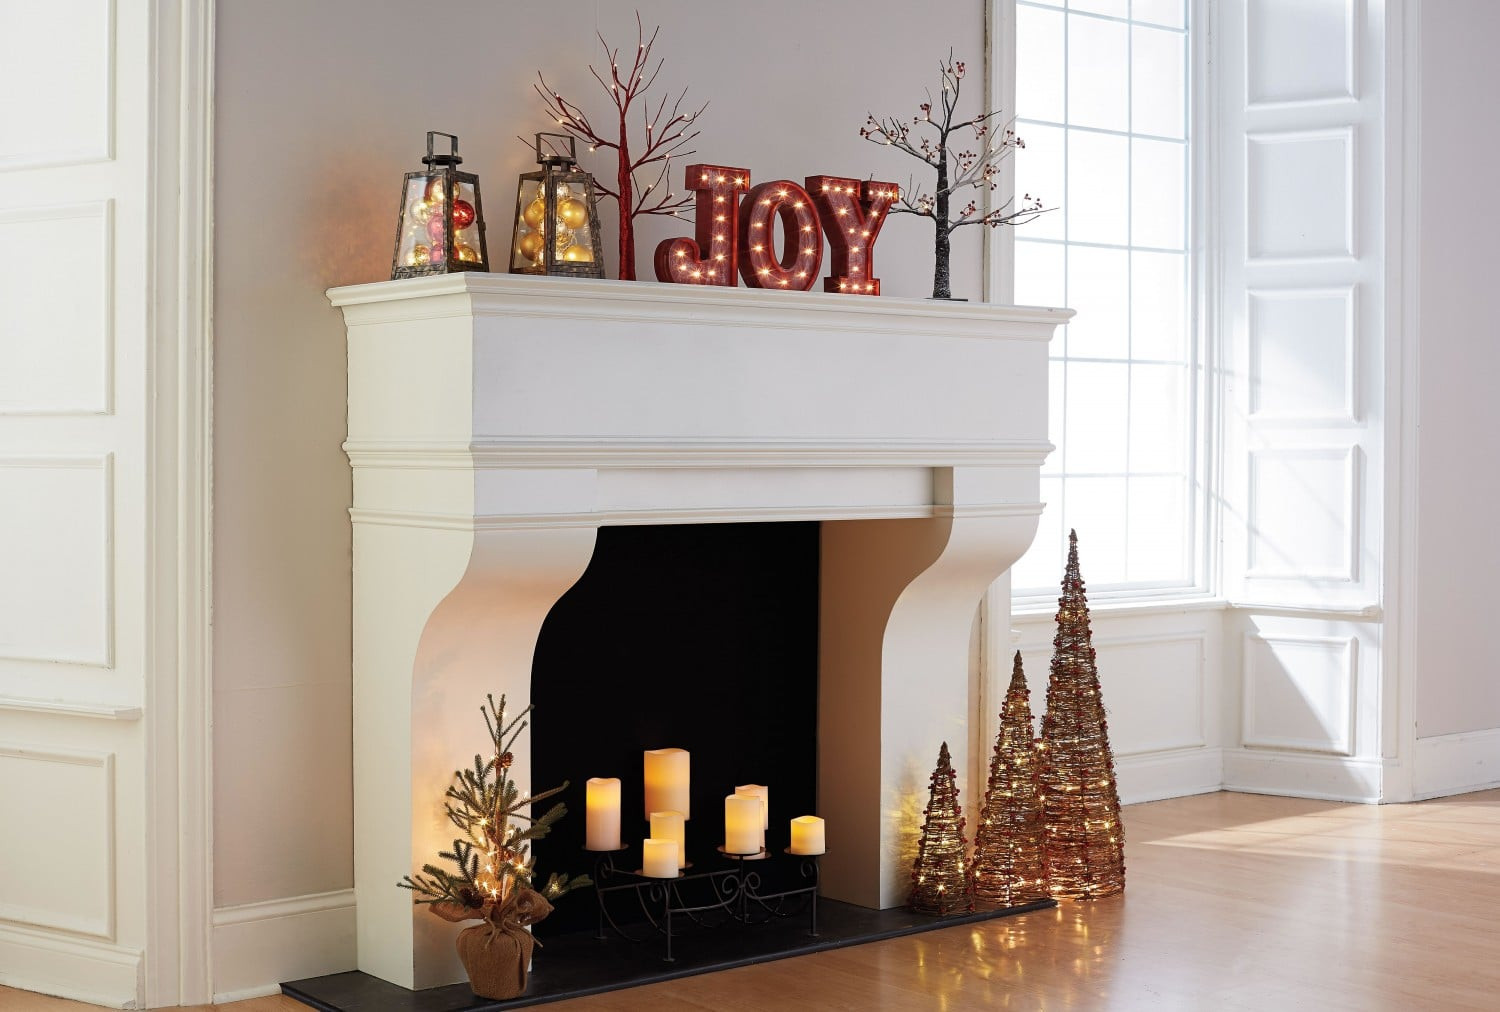 Kohls Christmas Decor
 Holiday Decorating Ideas with Kohl s